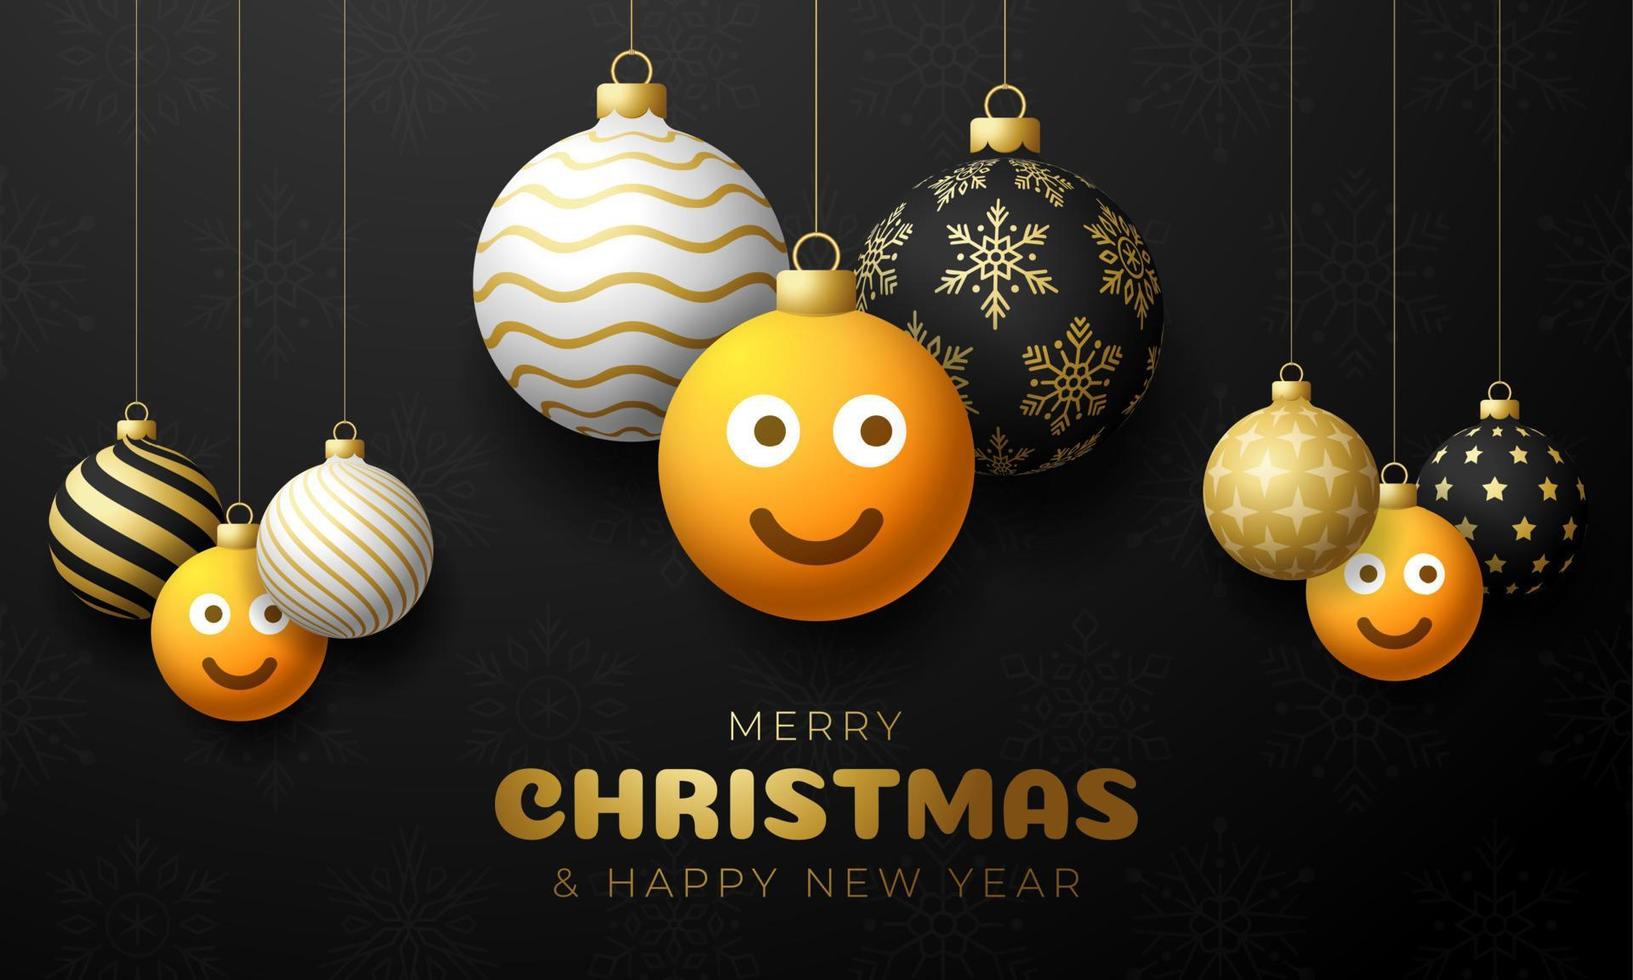 vrolijke kerstkaart met glimlach emoji gezicht. vectorillustratie in vlakke stijl met xmas belettering en emotie in kerstbal hangen aan draad op achtergrond vector